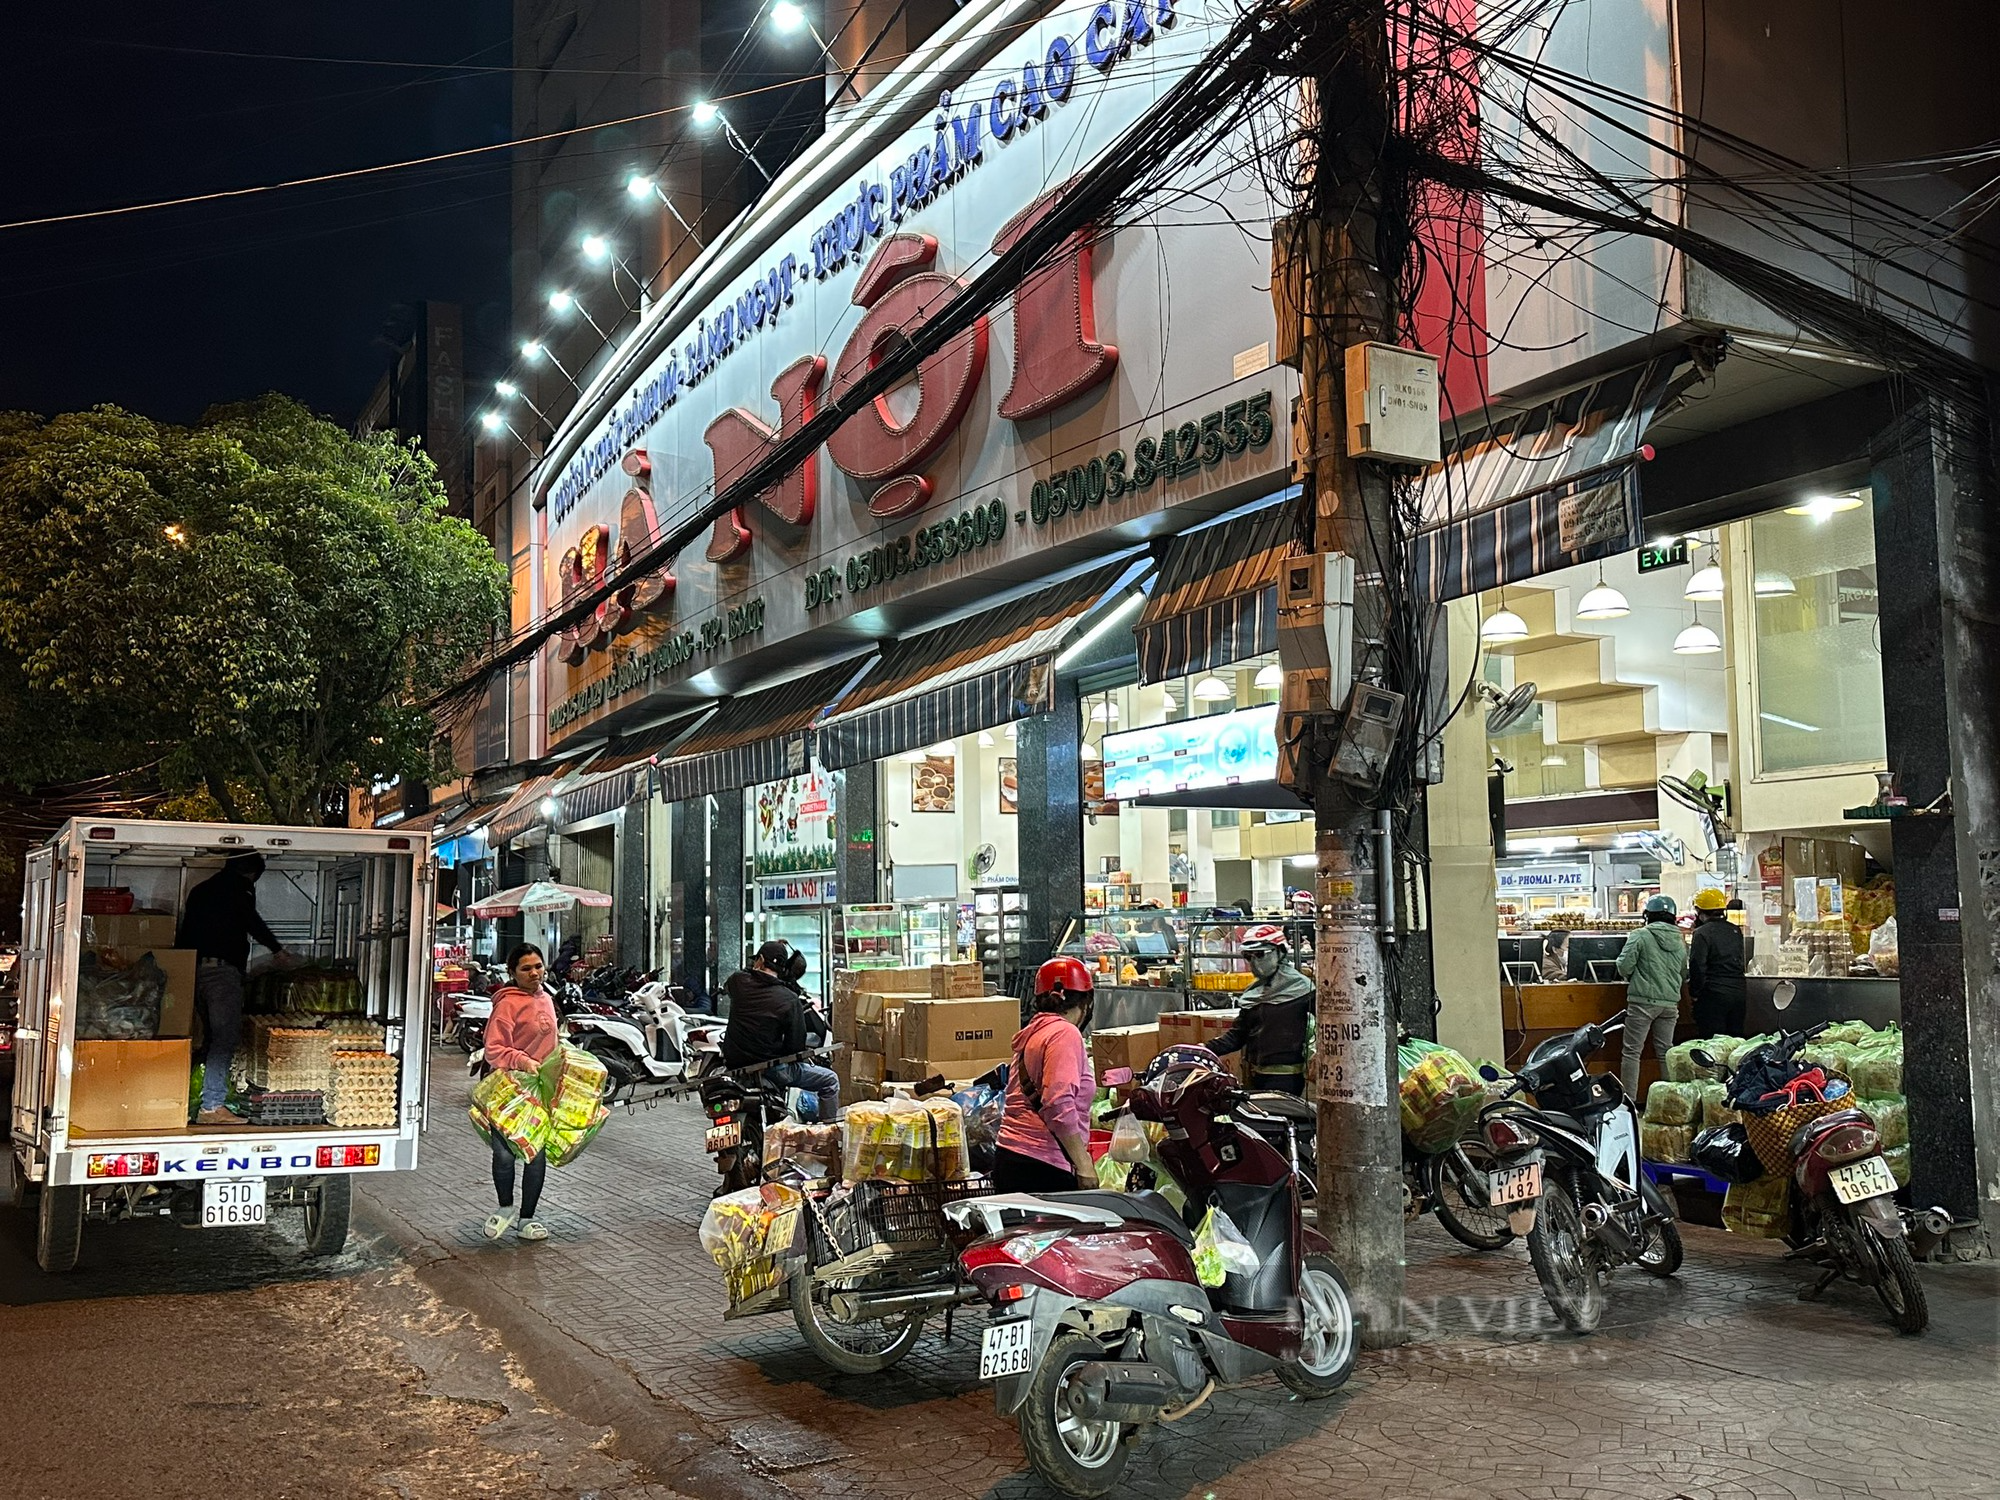 Vi phạm VSATTP, hai cơ sở kinh doanh bánh mì và giò chả lớn ở Đắk Lắk bị xử phạt - Ảnh 1.